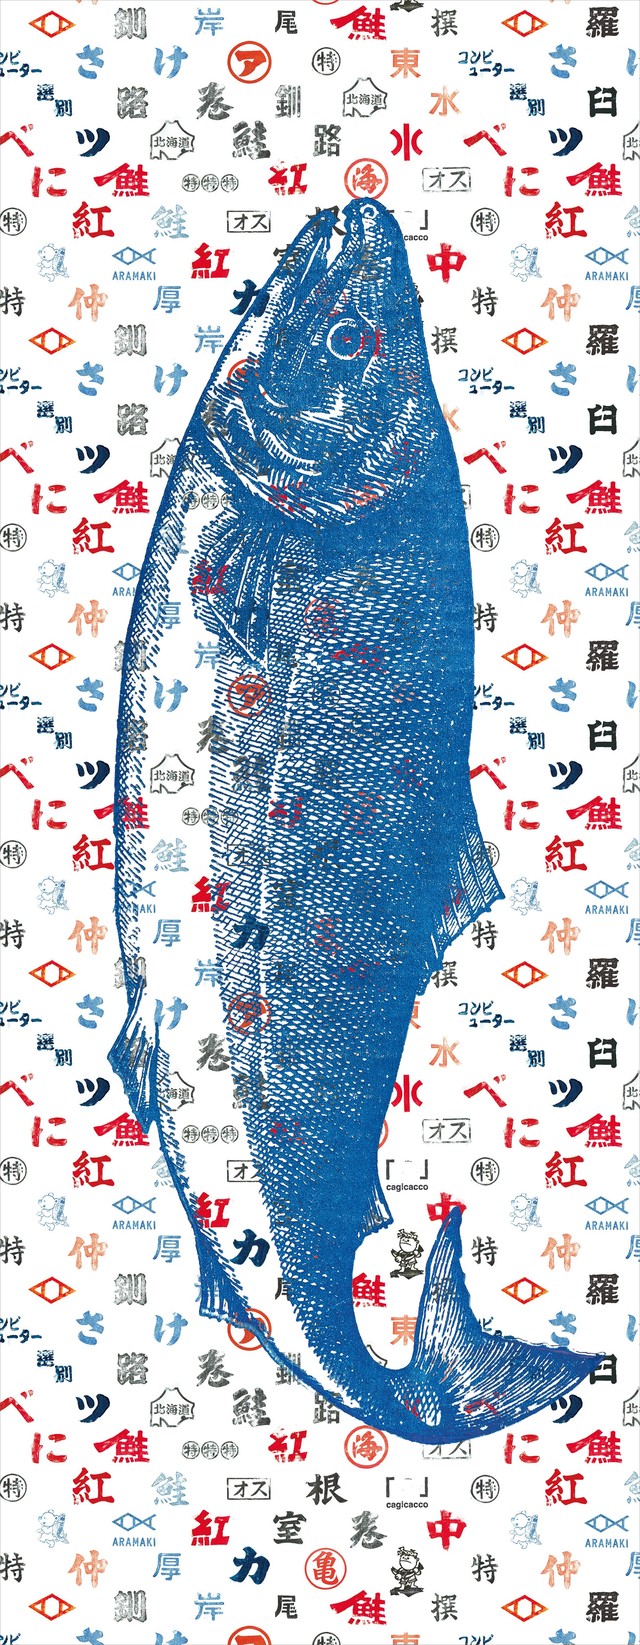 シャケグラム手ぬぐい 鮭イラスト Aramaki